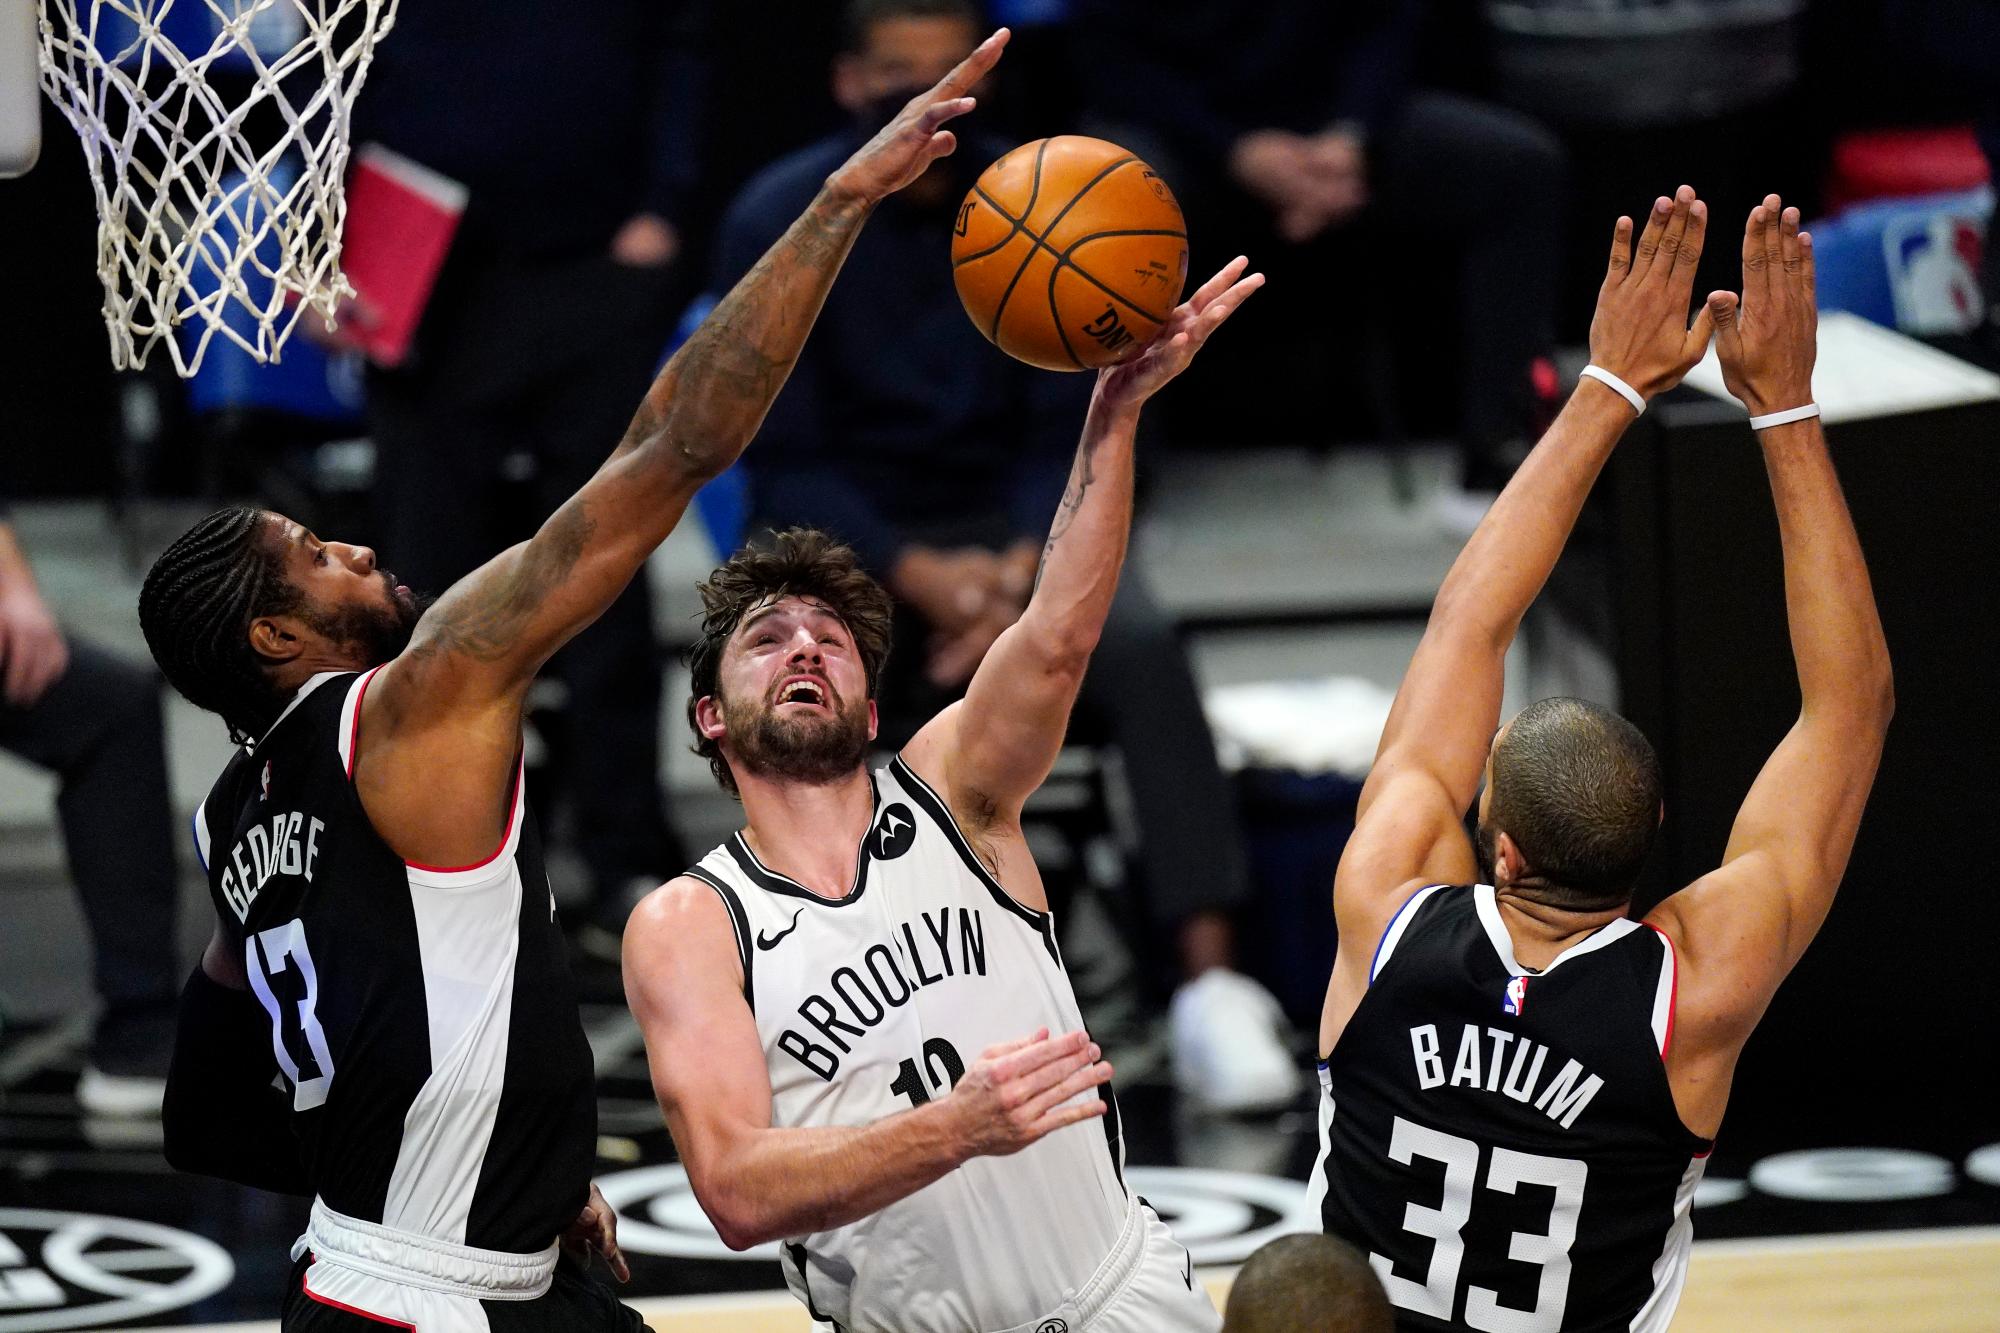 El alero de los Brooklyn Nets, Joe Harris, en el centro, dispara cuando los Angeles Clippers escolta a Paul George, a la izquierda, y el alero Nicolas Batum defienden durante la segunda mitad de un juego de baloncesto de la NBA el domingo 21 de febrero de 2021 en Los Ángeles.